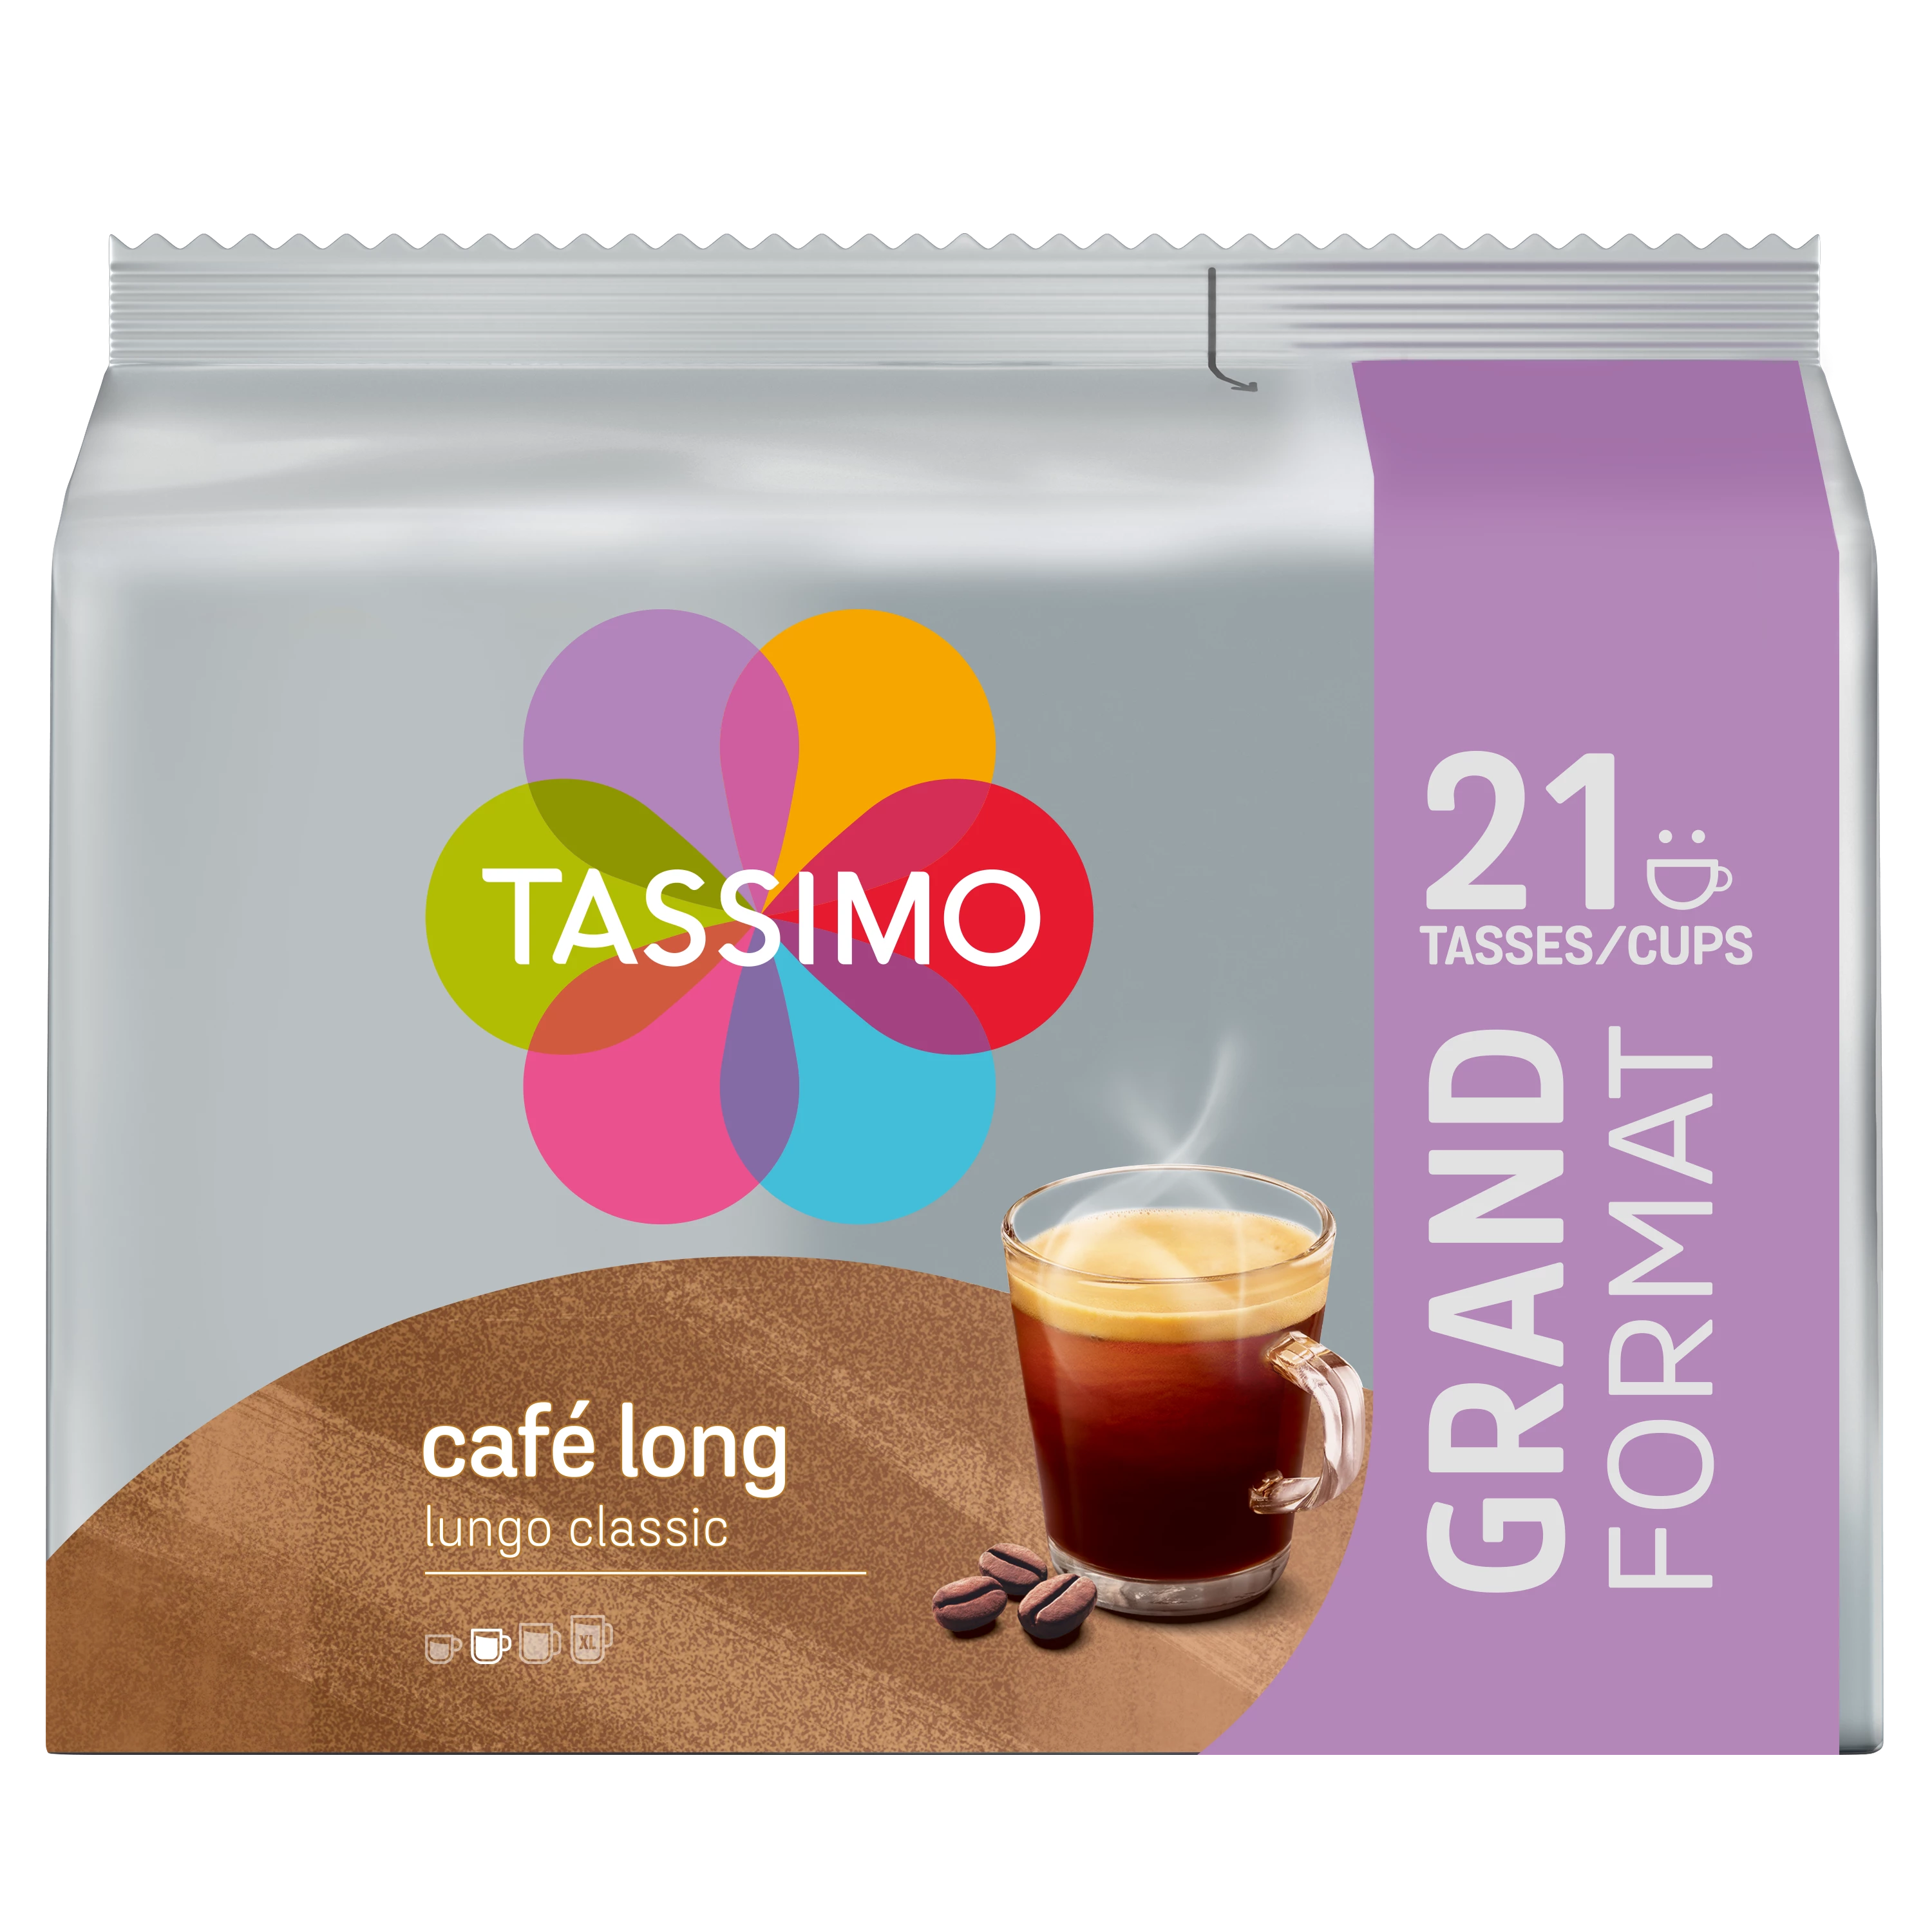 Tassimo Cafe Lange Klasse X21 141g - TASSIMO